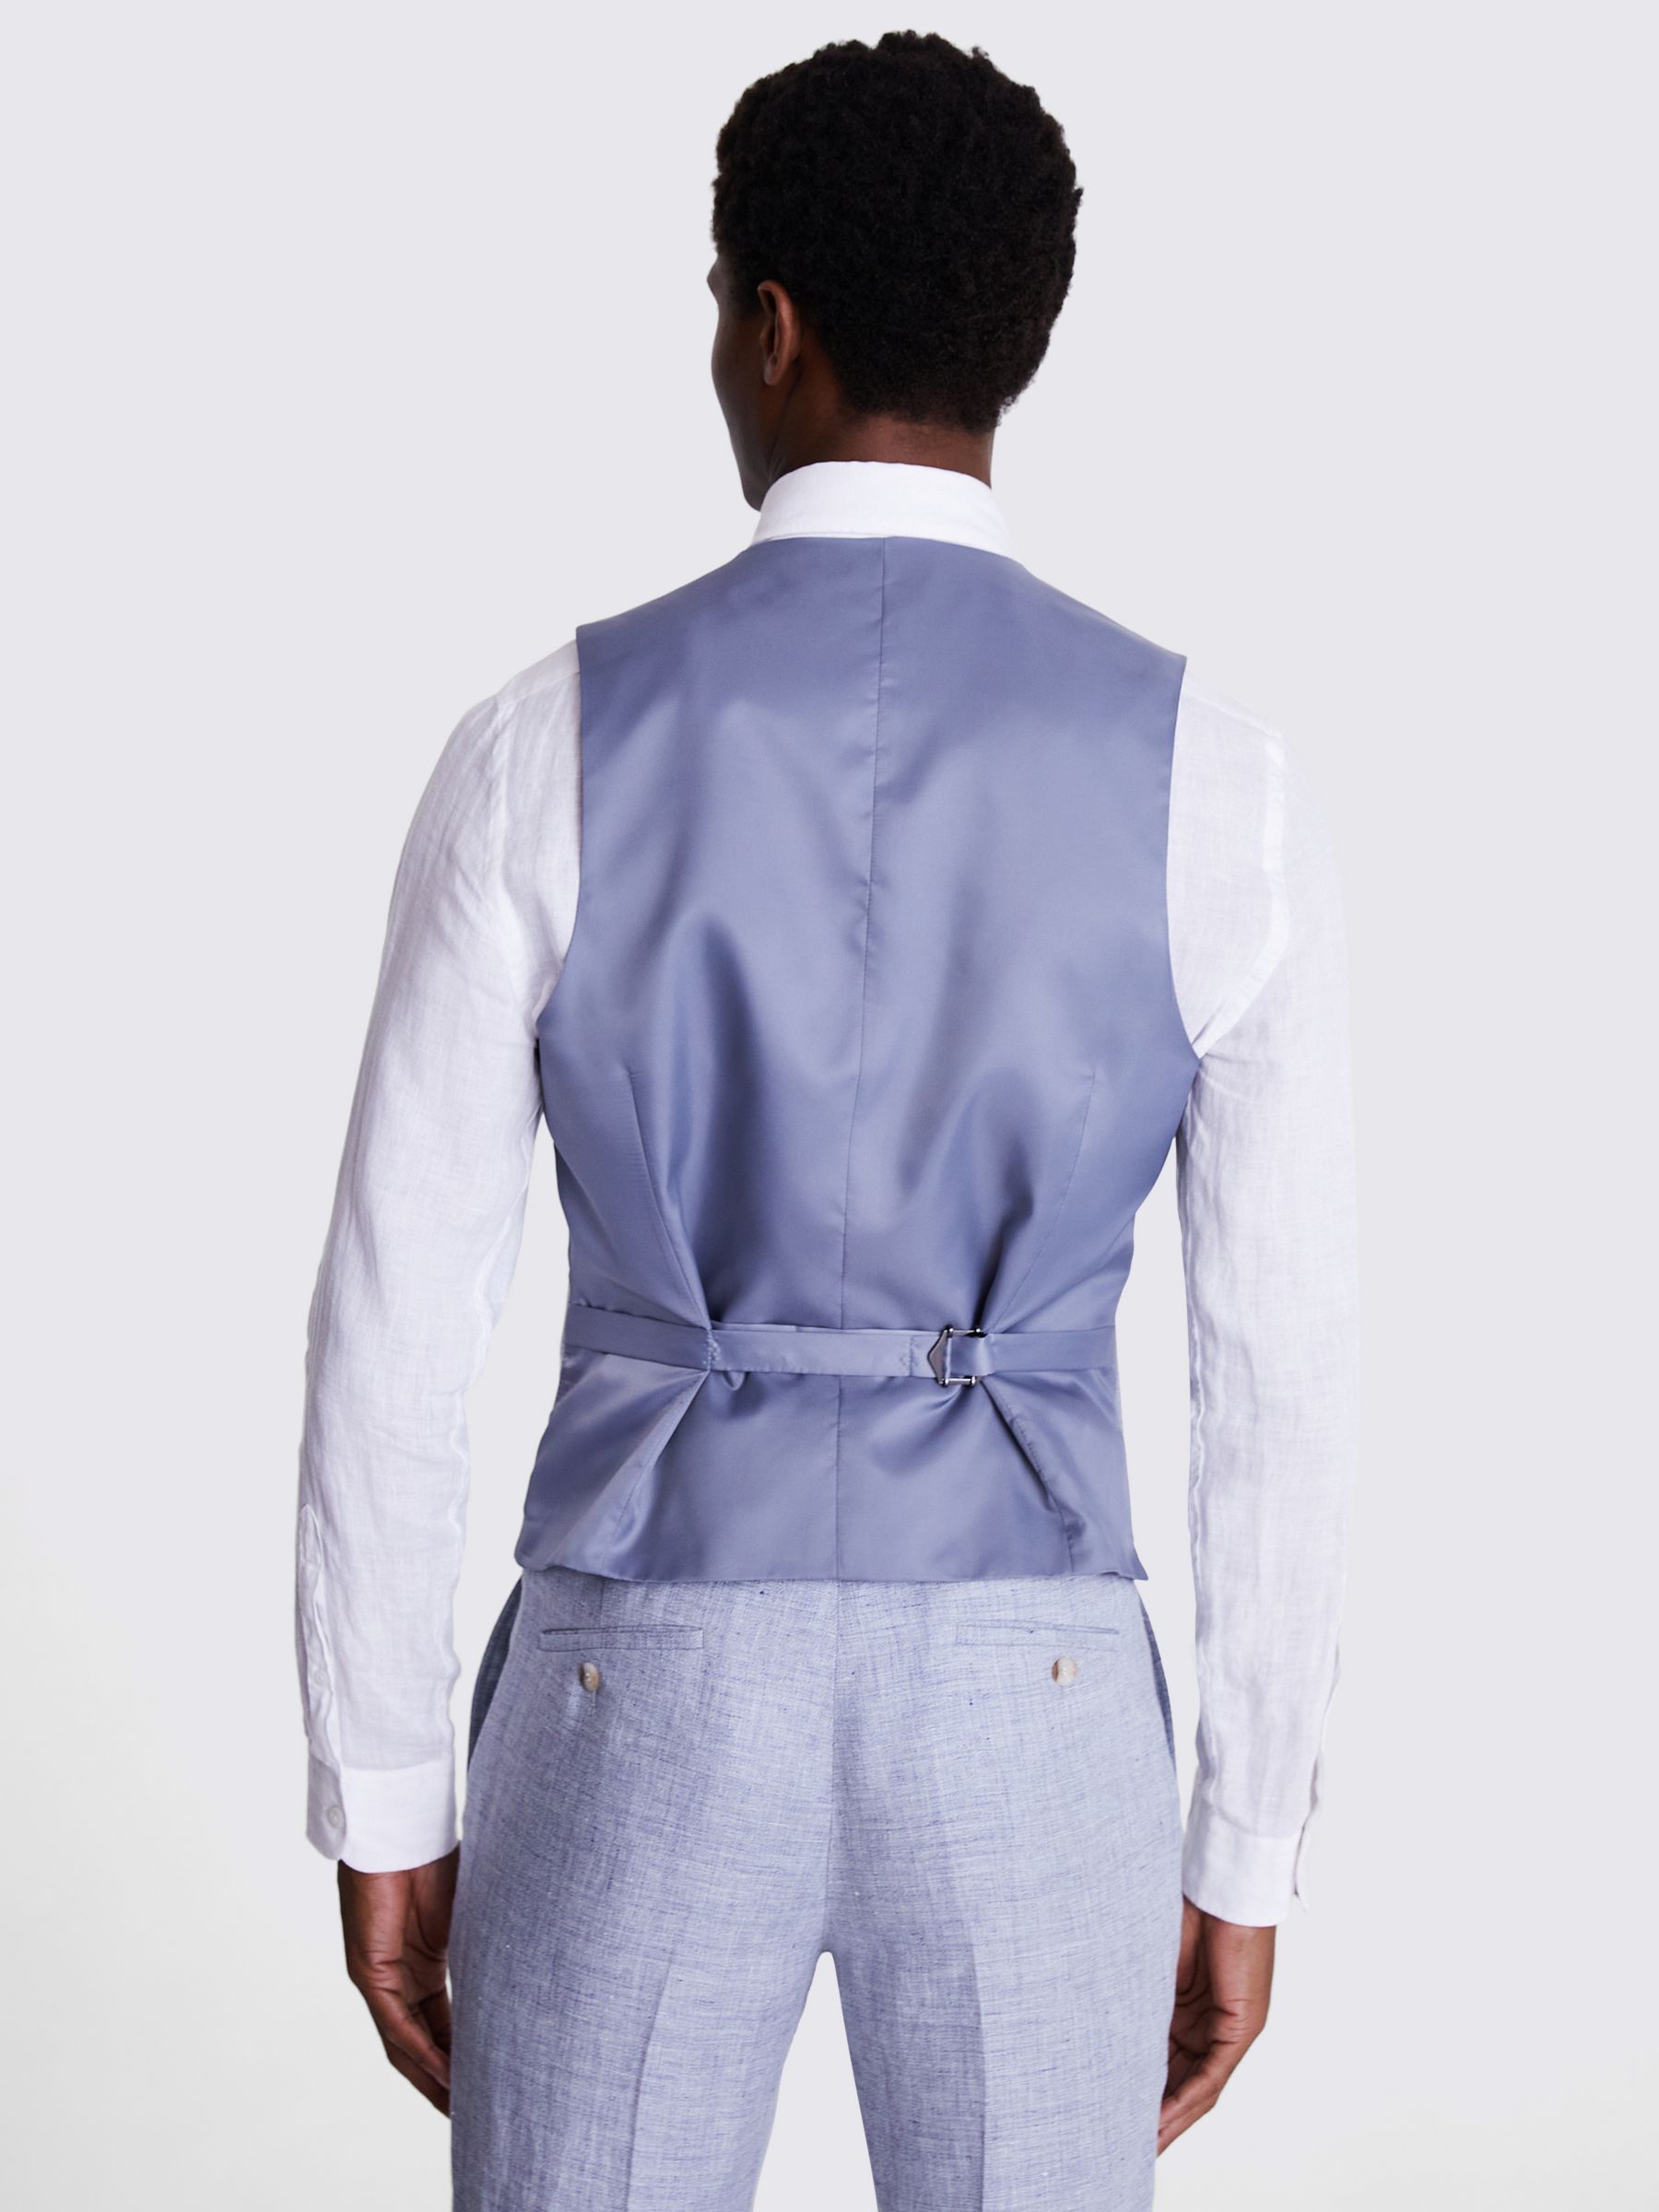 Moss Tailored Fit Linen Waistcoat, Light Blue, 36R